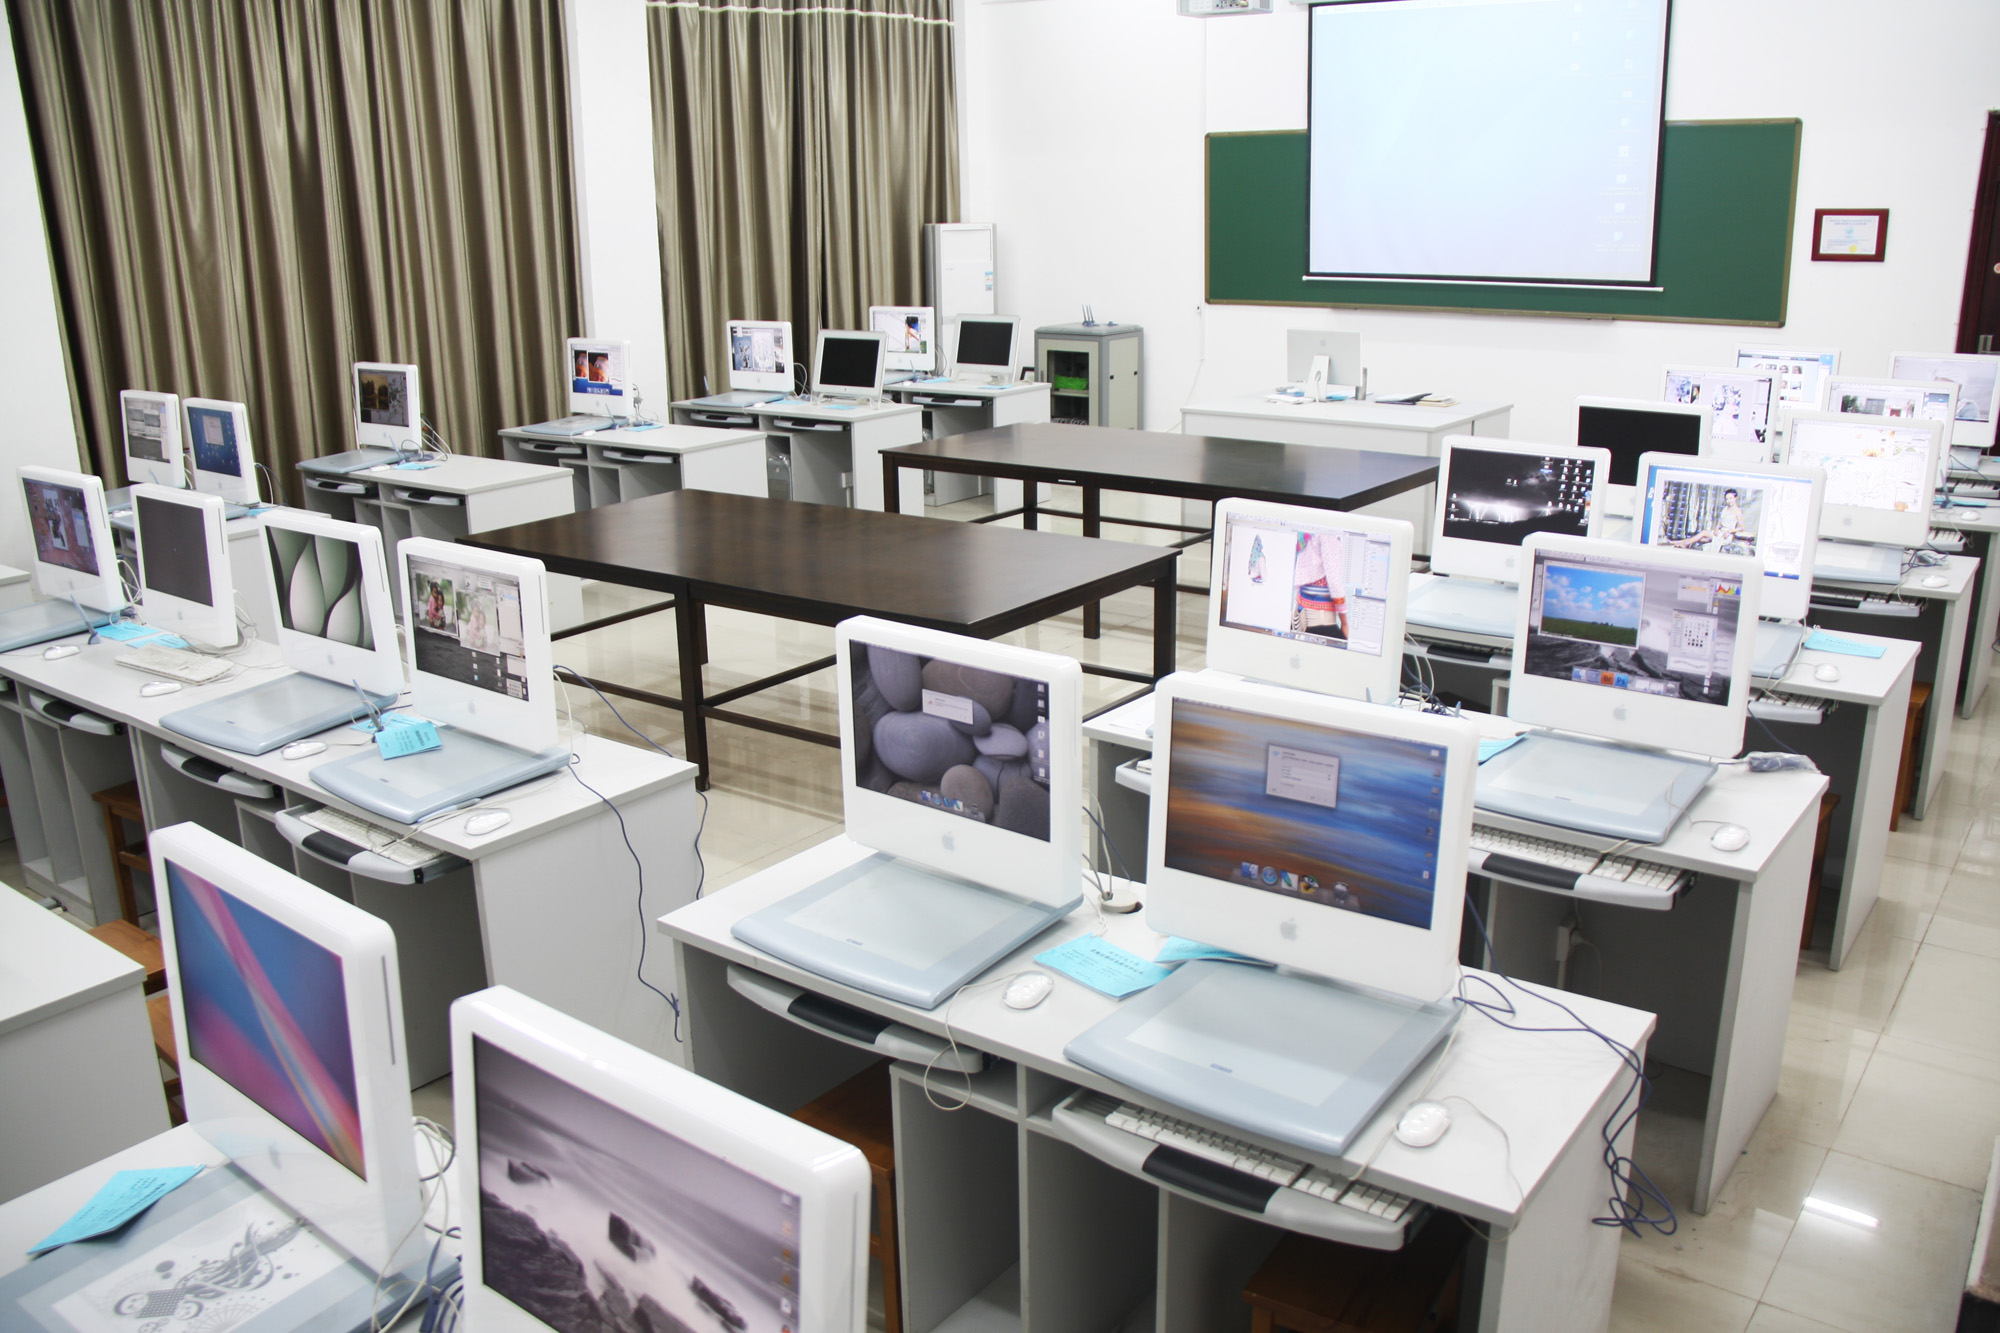 计算机教室_上海盛策文化传播有限公司